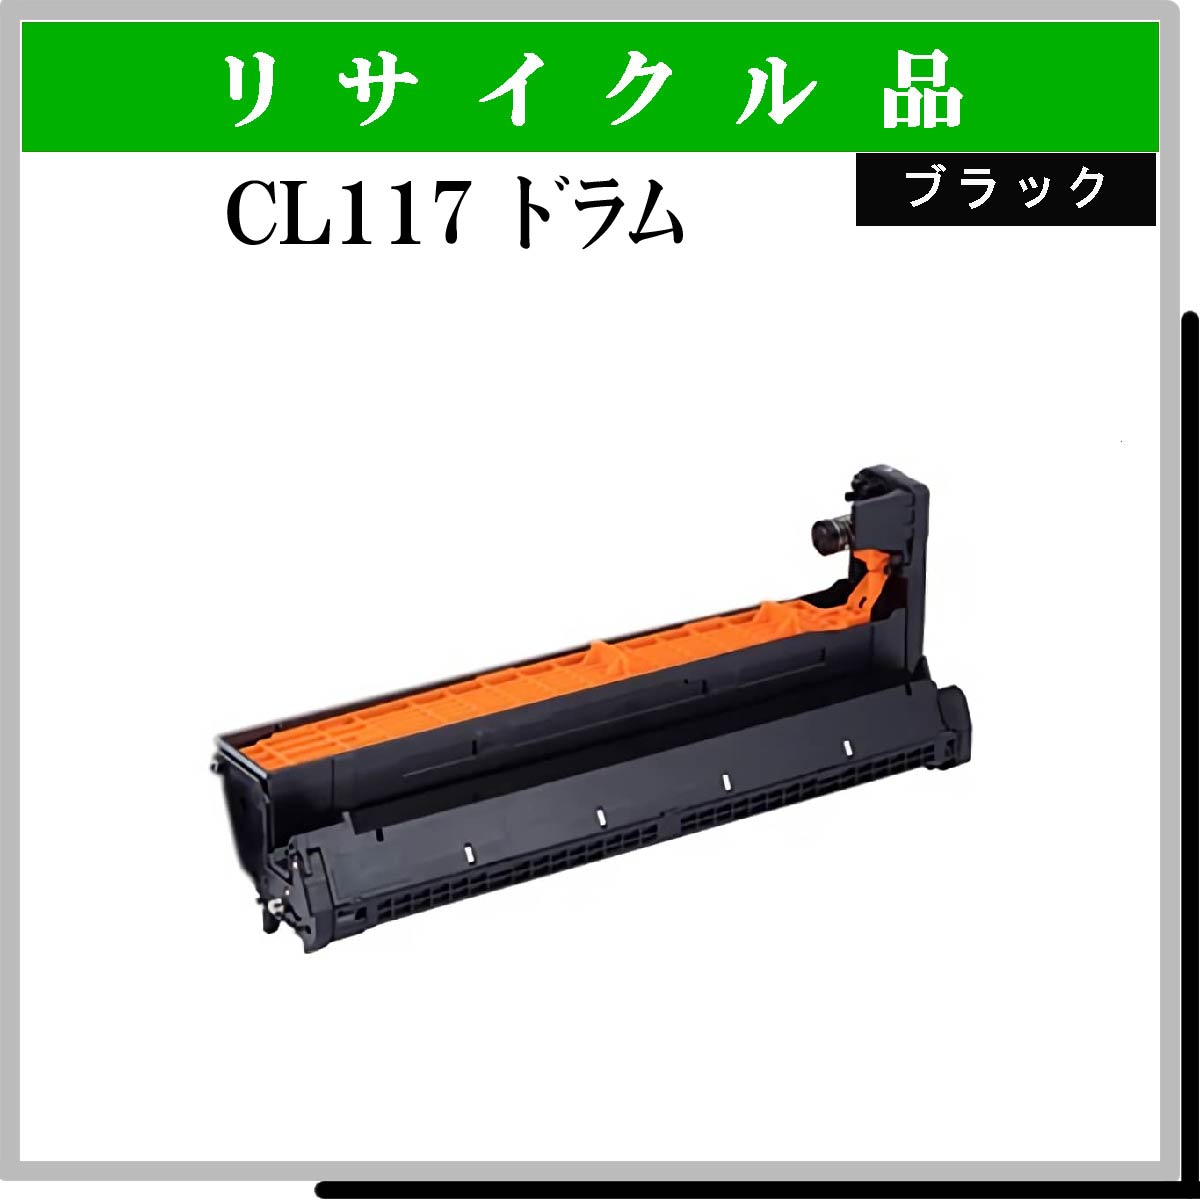 CL117 ﾄﾞﾗﾑ ﾌﾞﾗｯｸ